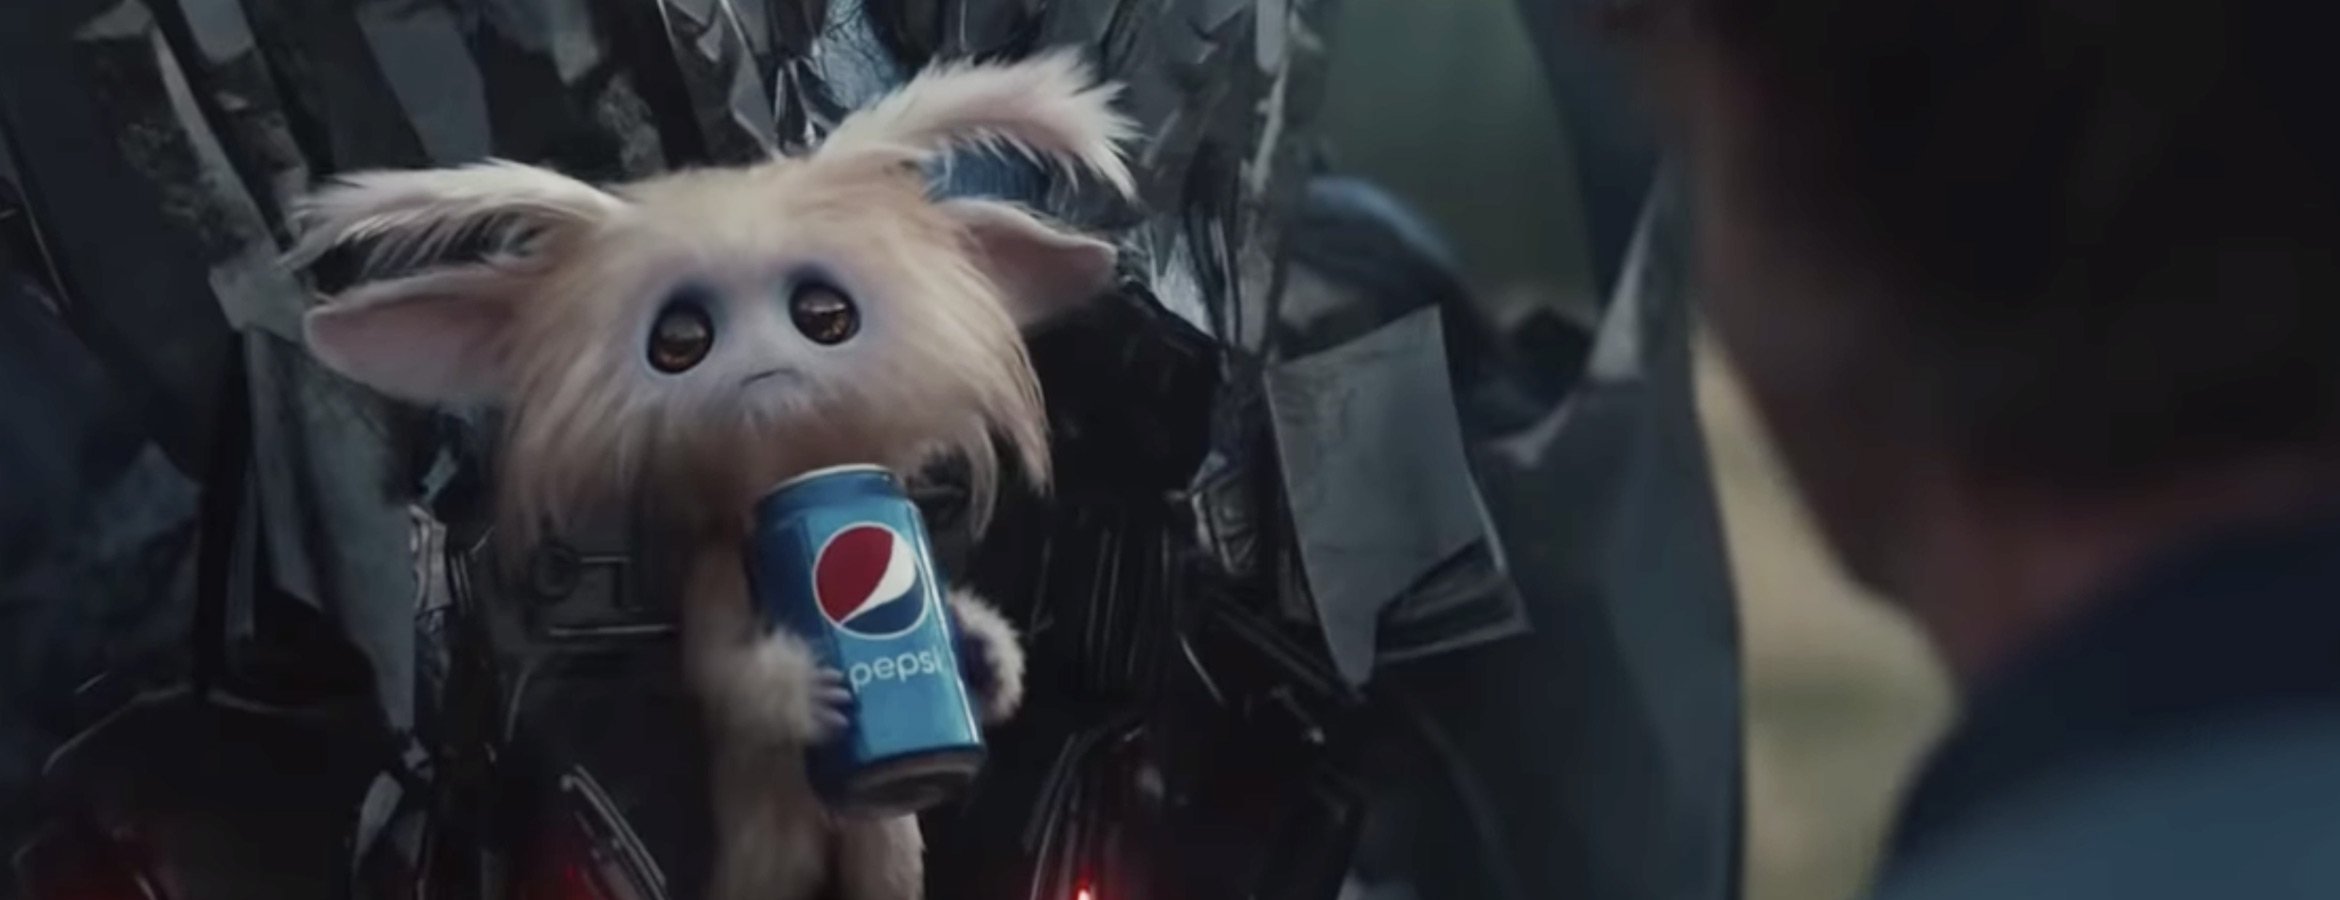 Pepsi dans la science-fiction